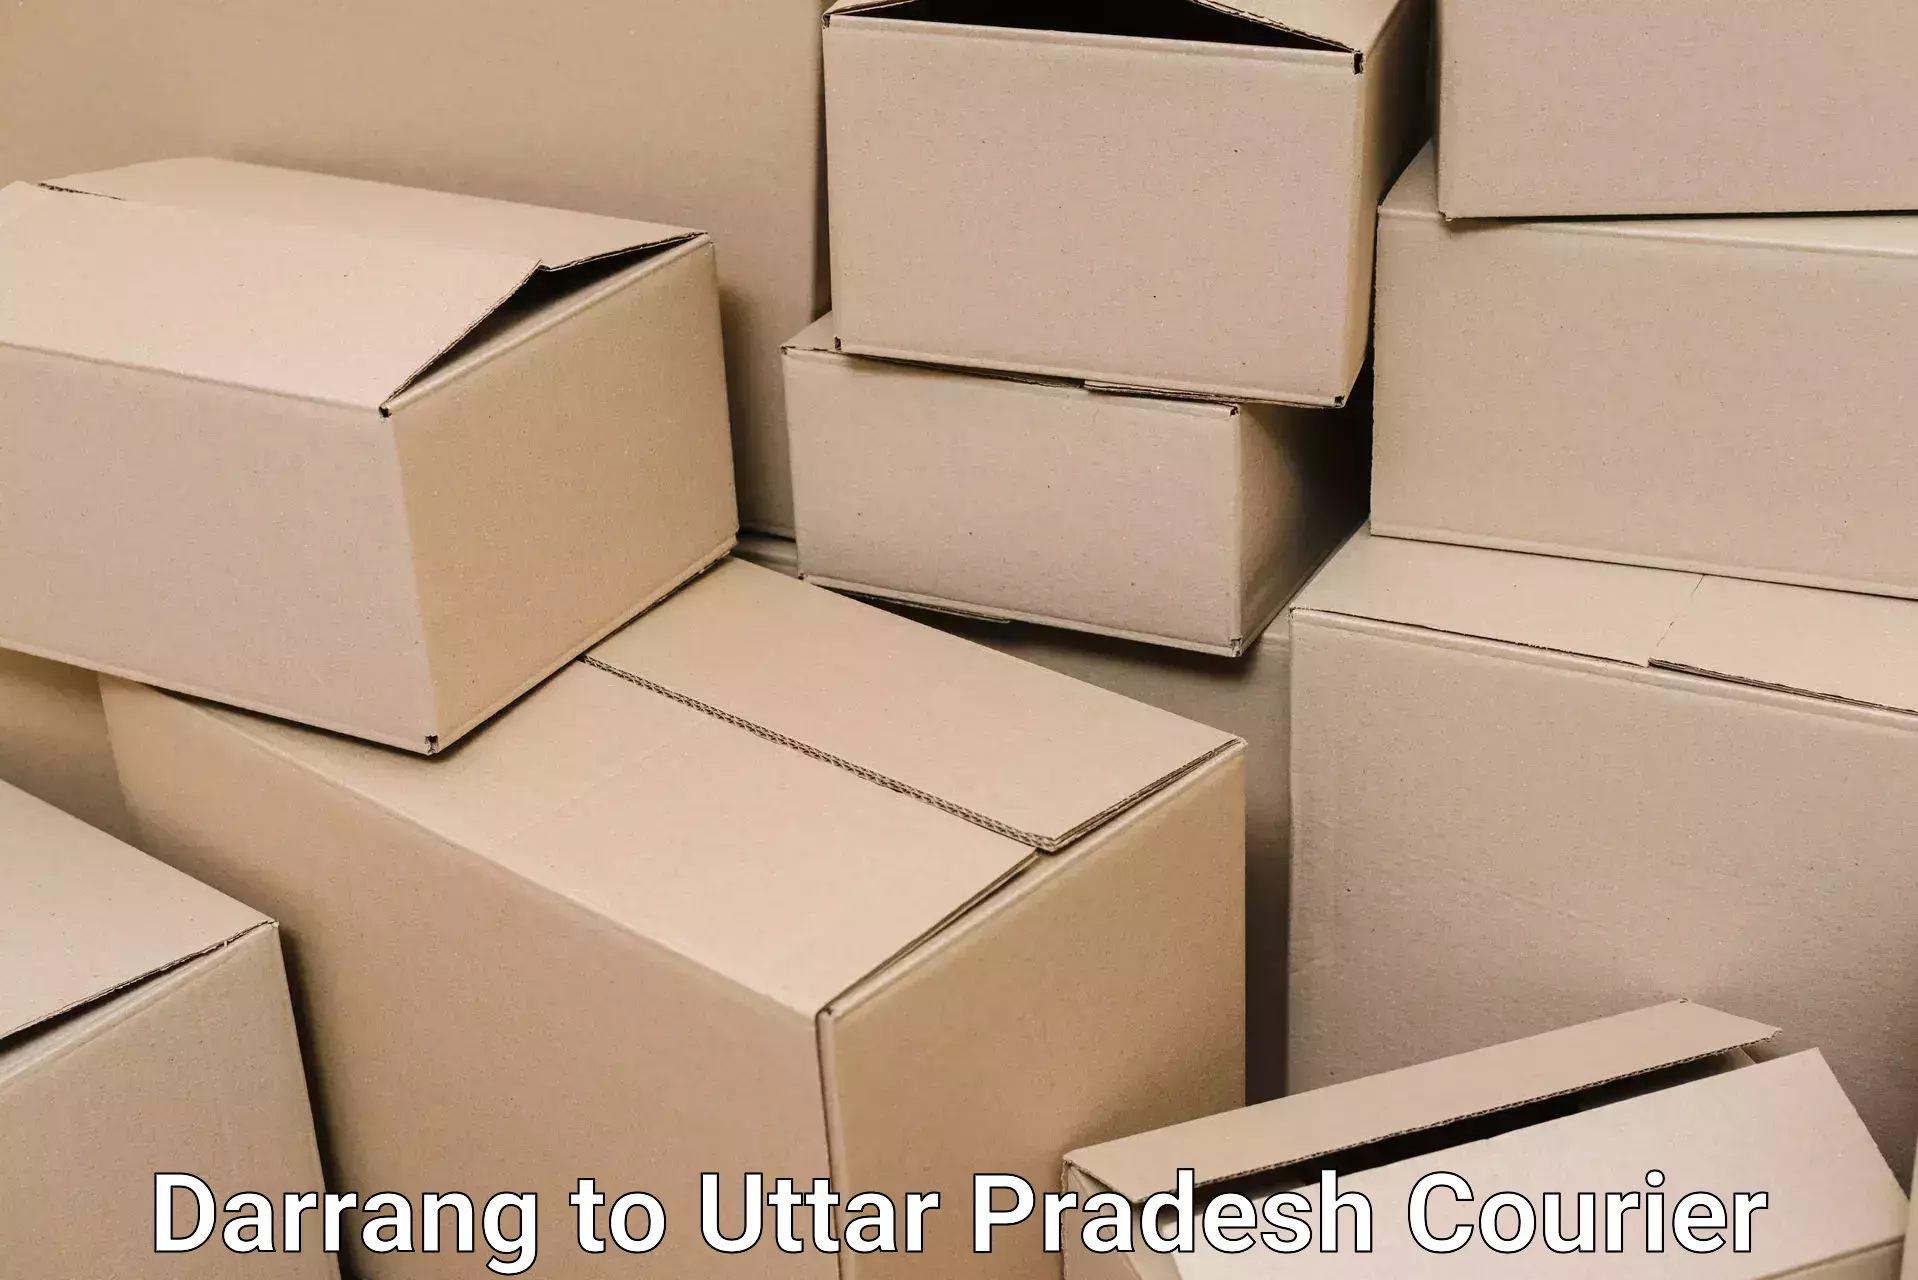 Furniture transport specialists Darrang to Uttar Pradesh